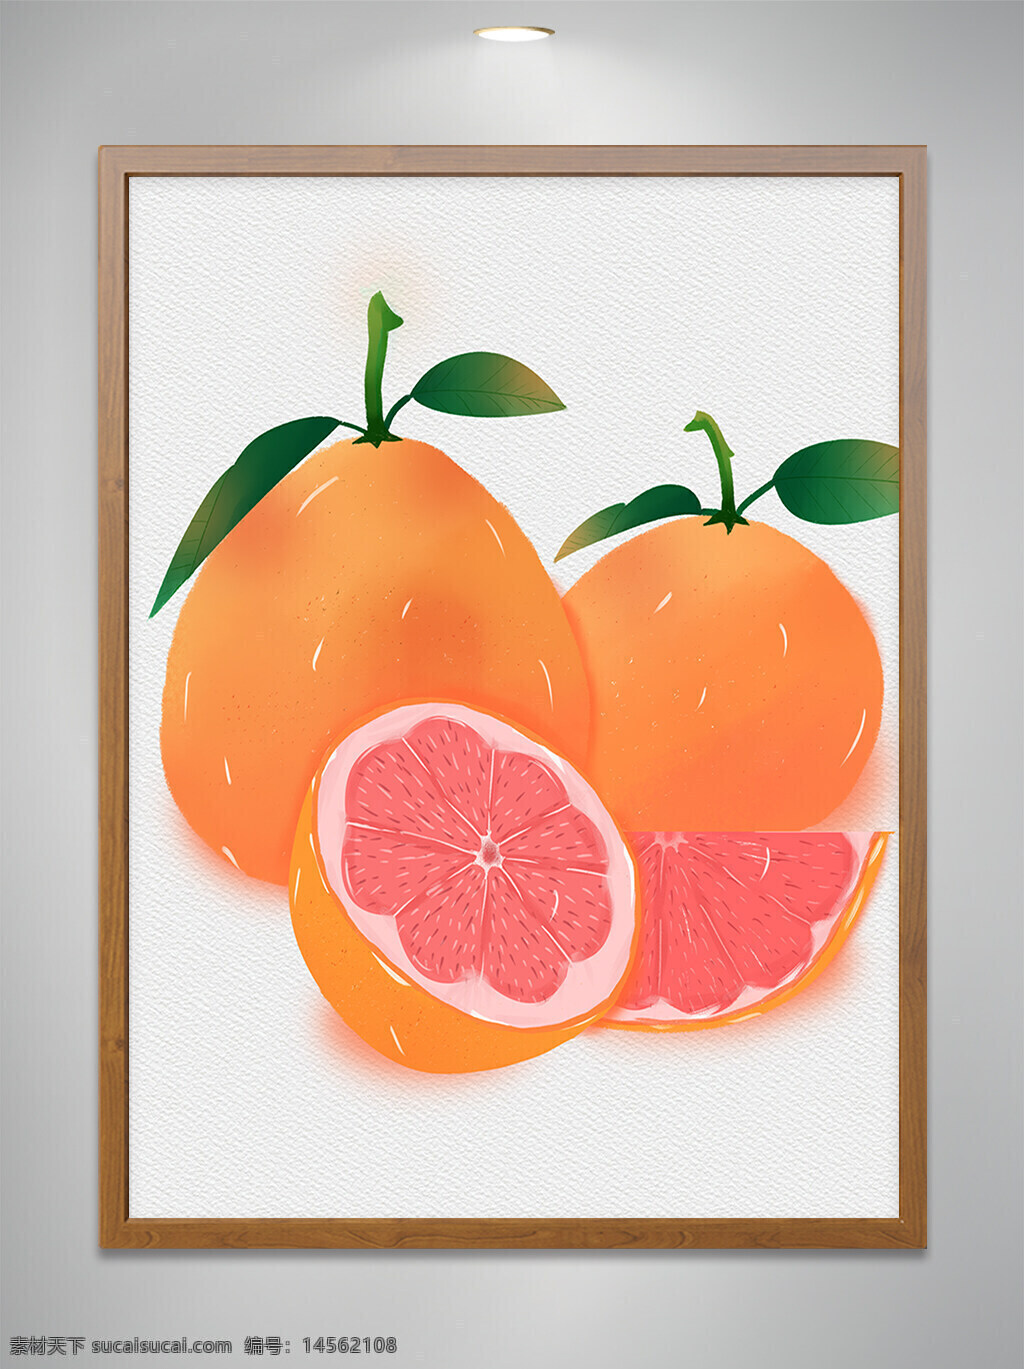 手绘水果 手绘西柚 柚子 西柚 水果 橙子 水果素材 橙色水果 分层水果 分层西柚